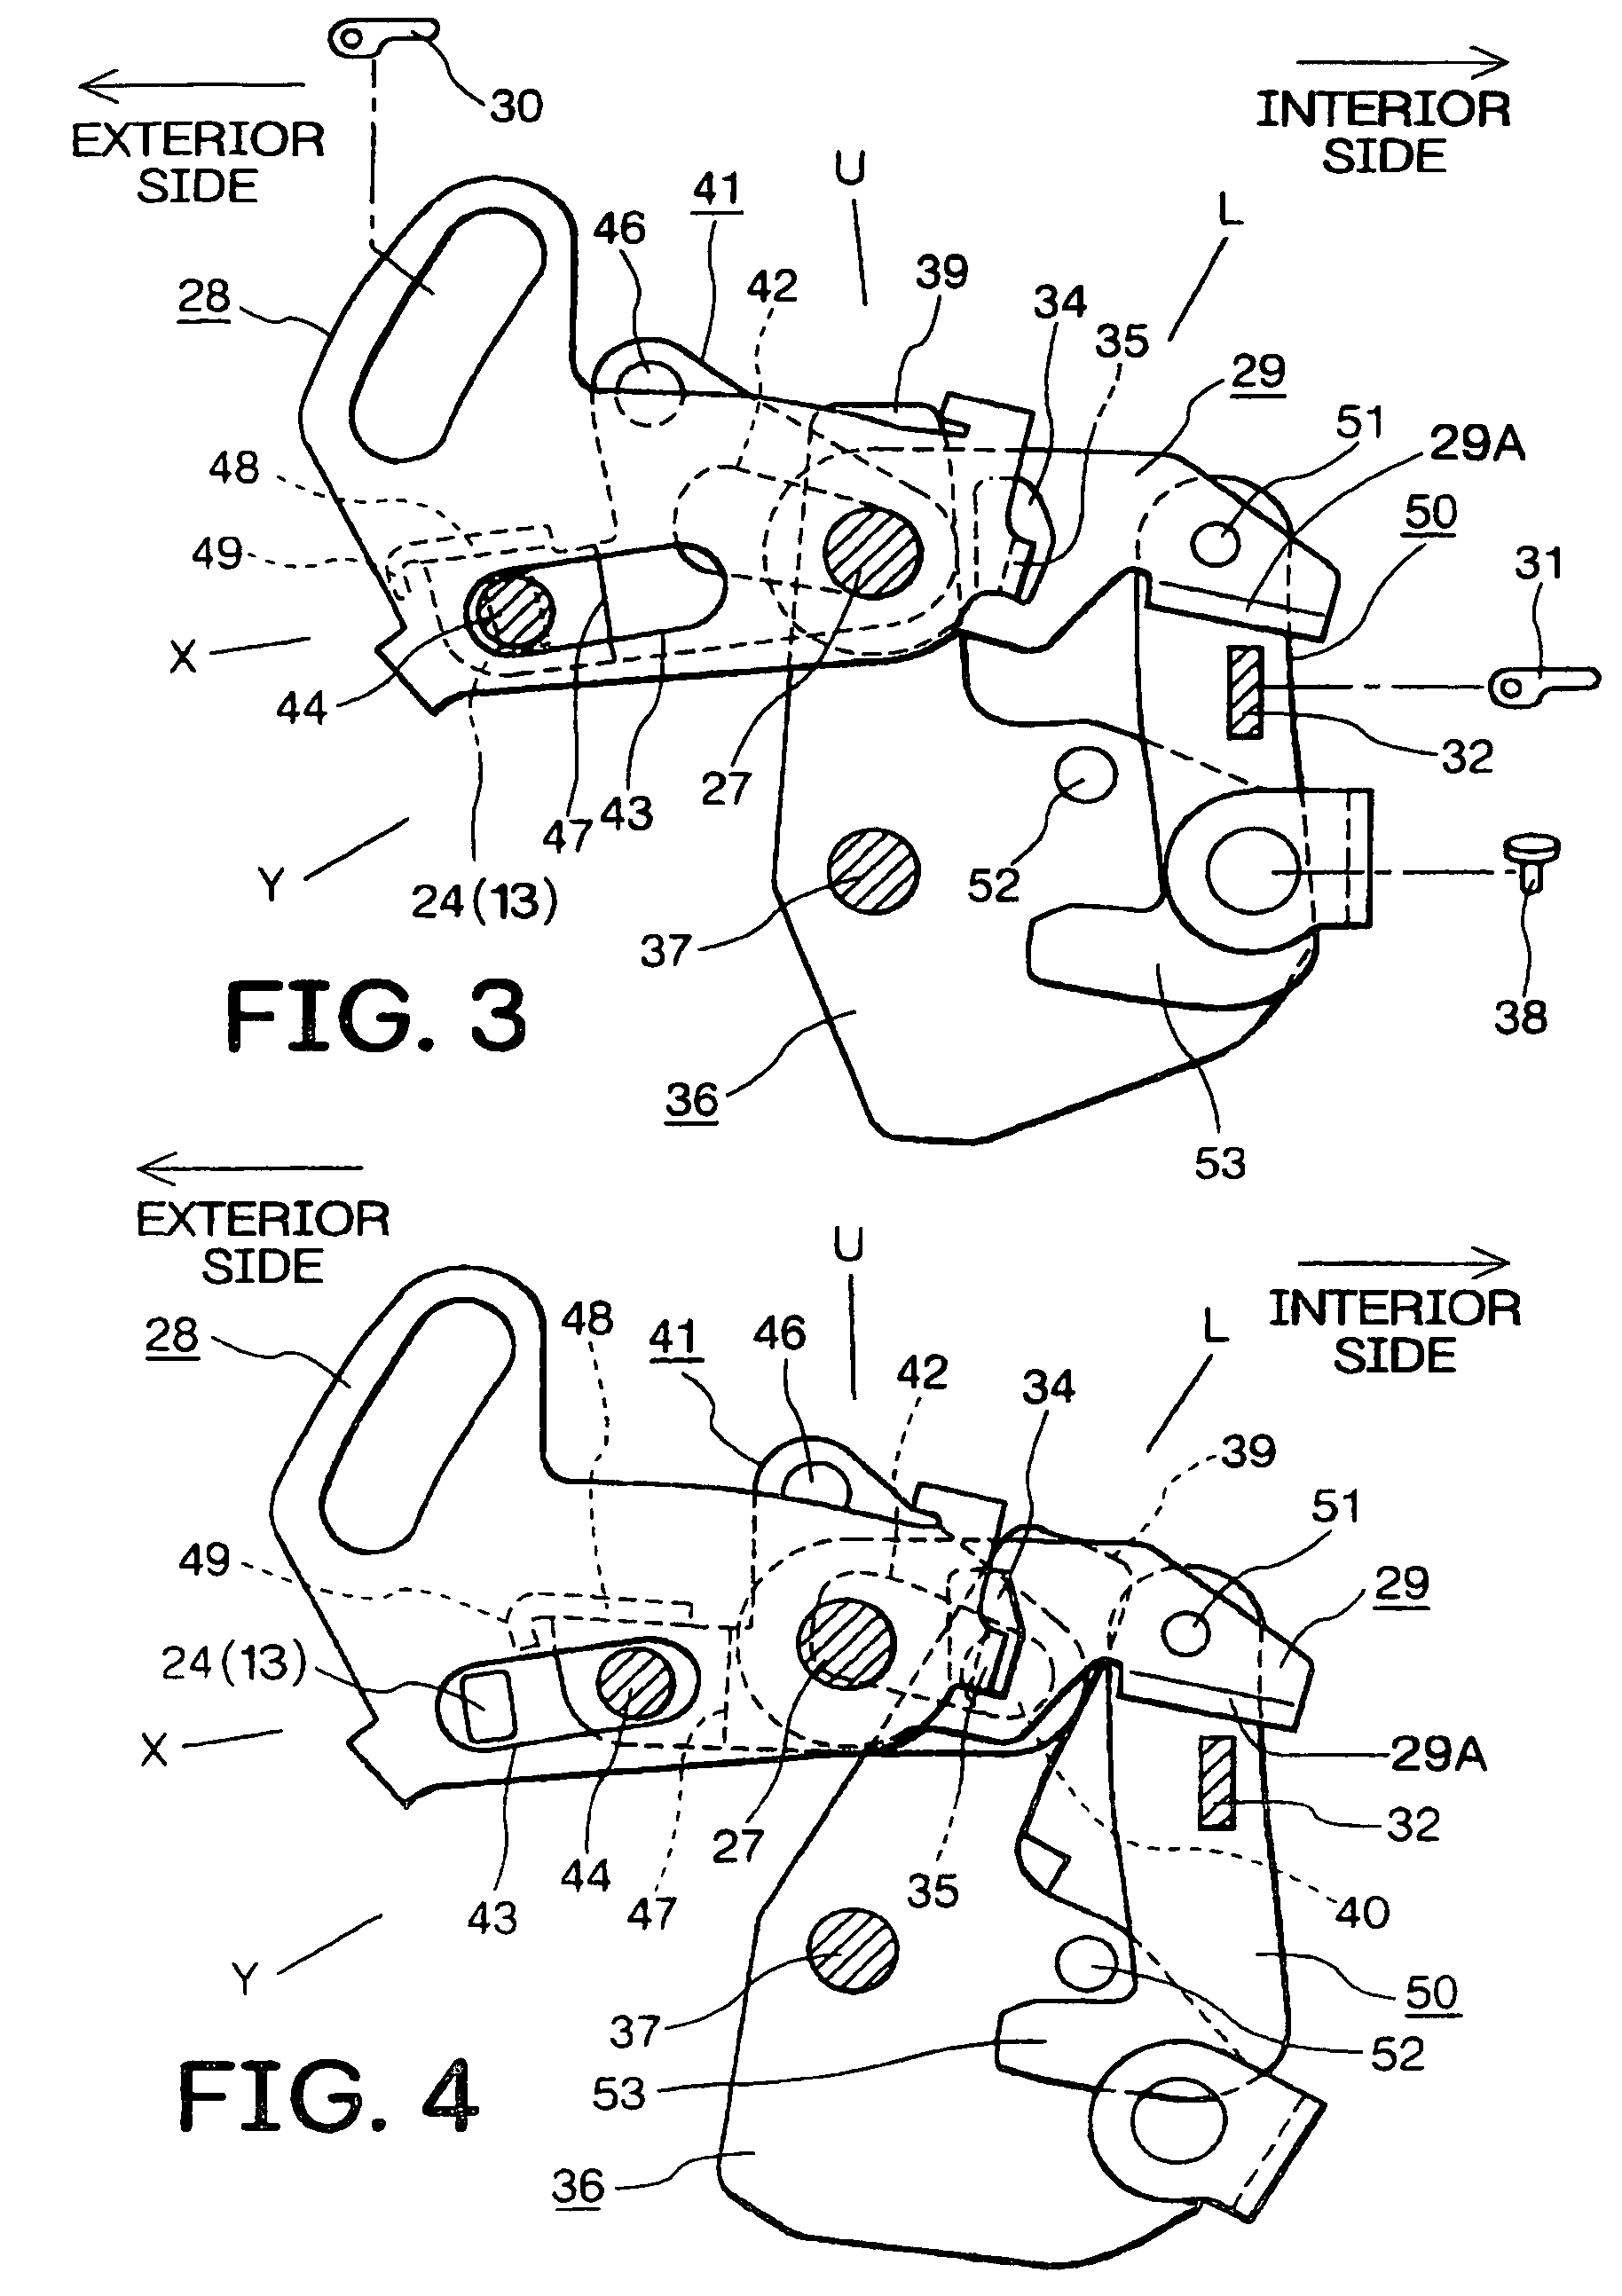 Double action mechanism of vehicle door latch device